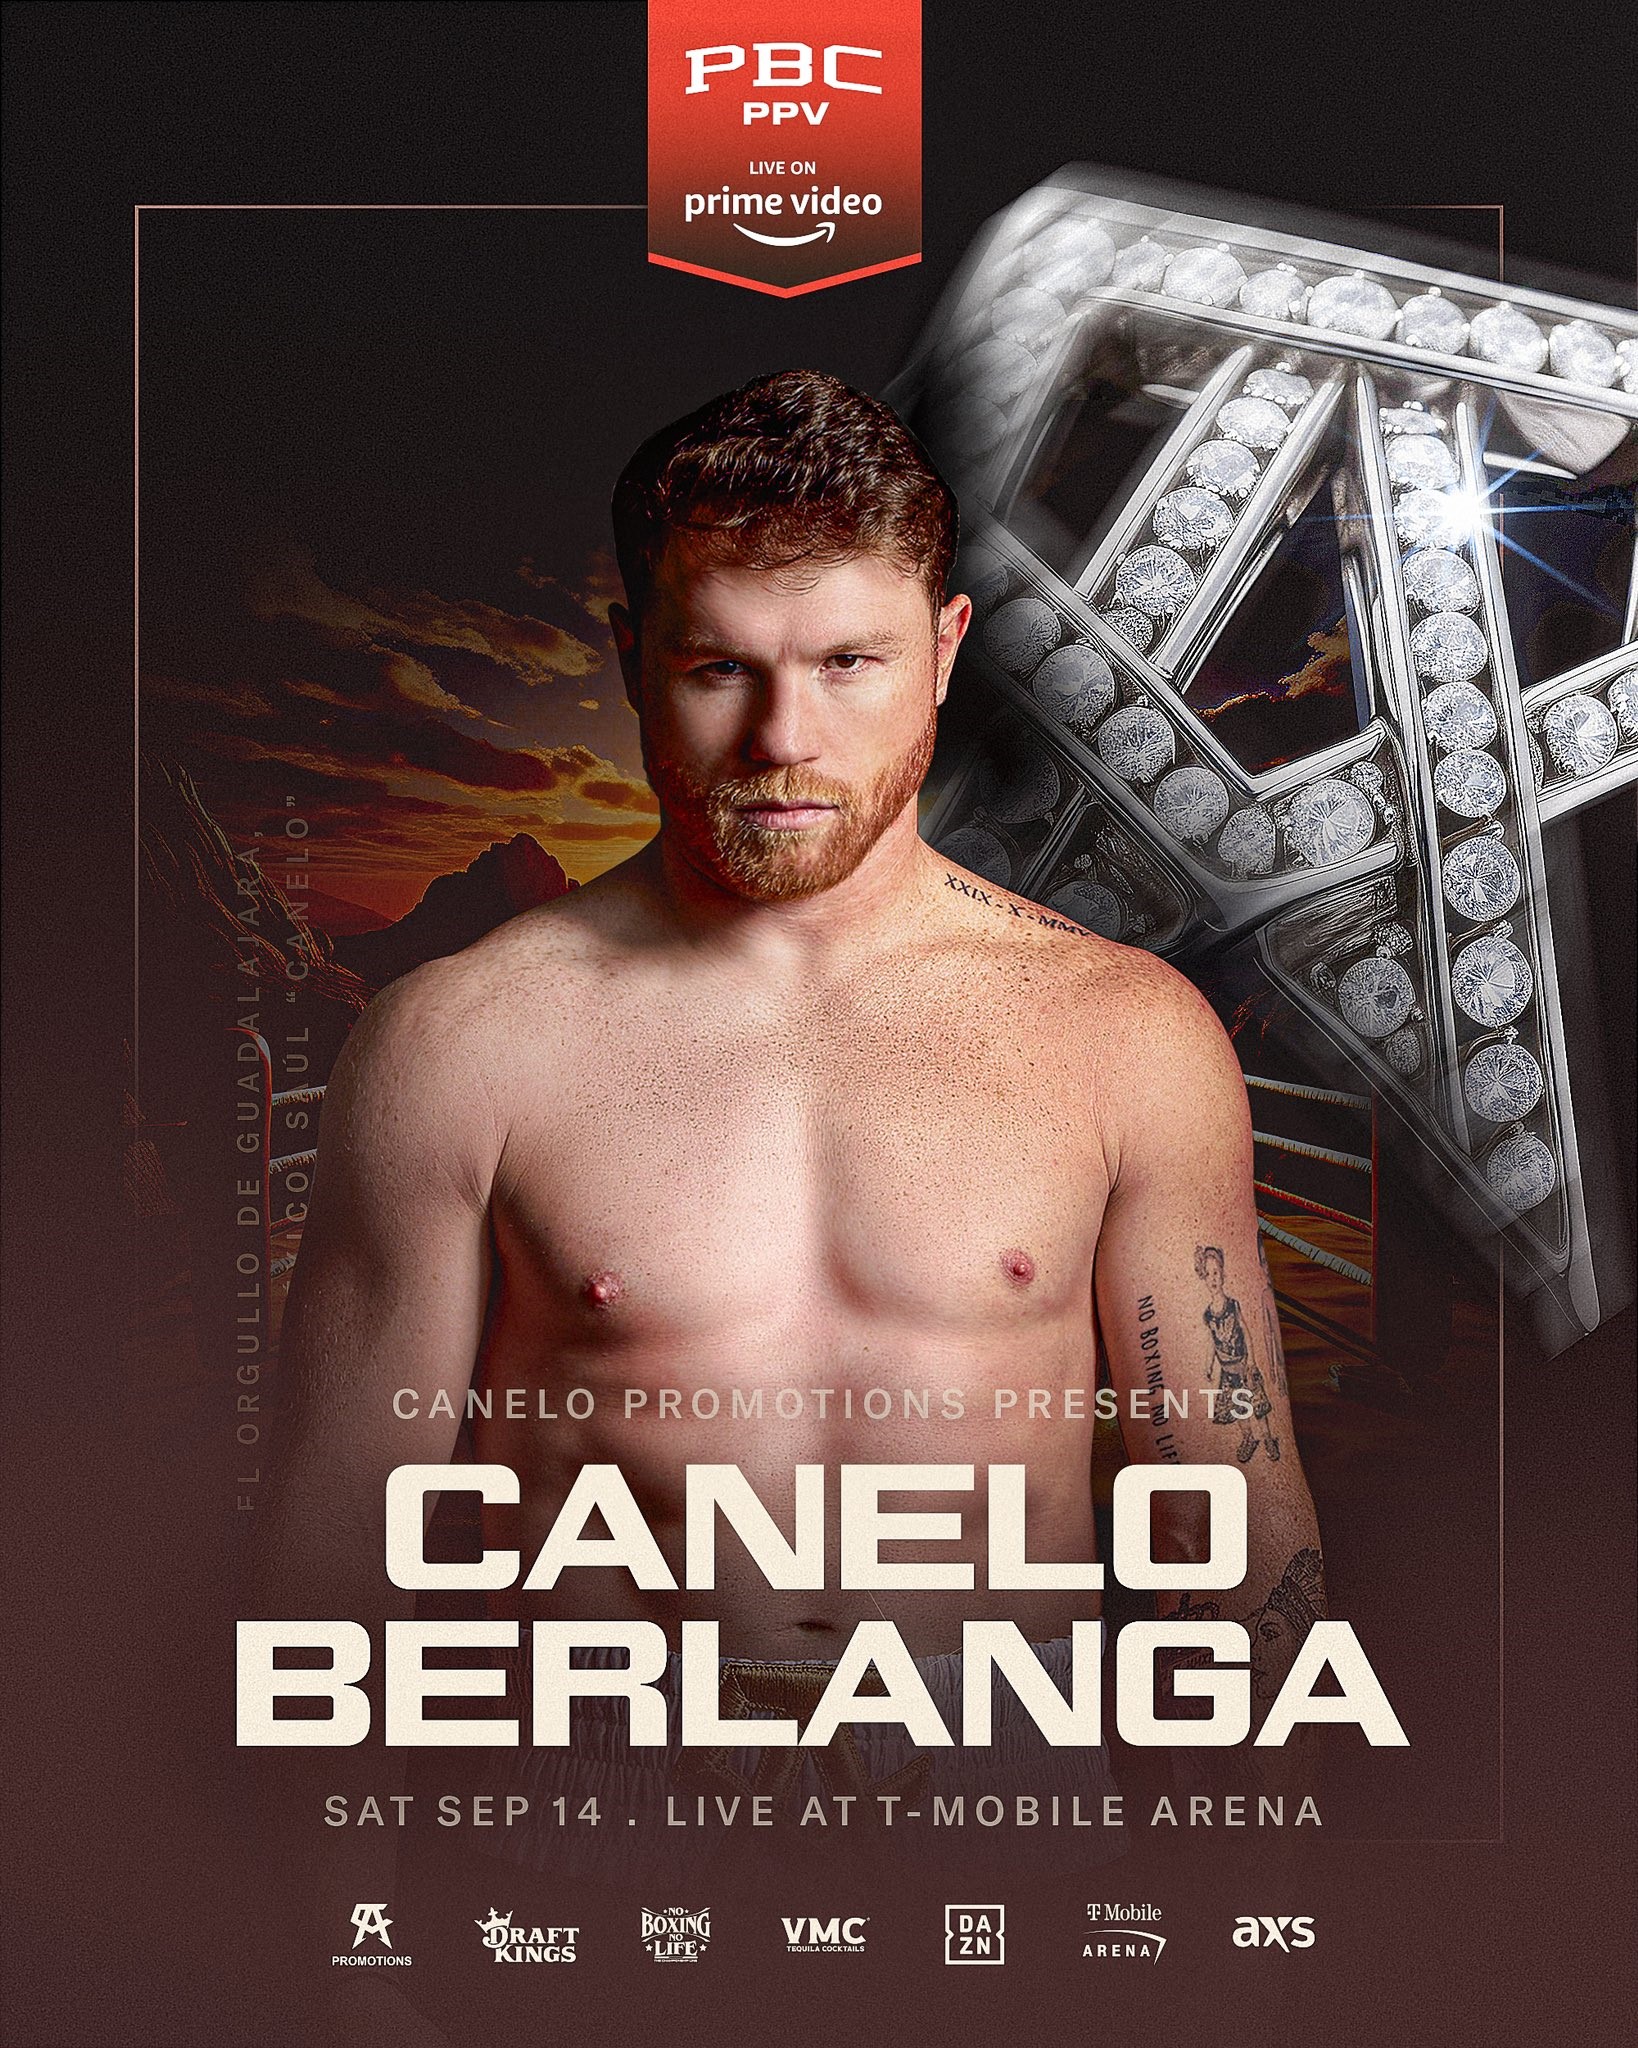 Canelo Alvarez vs. Edgar Berlanga on September 14 in Las Vegas